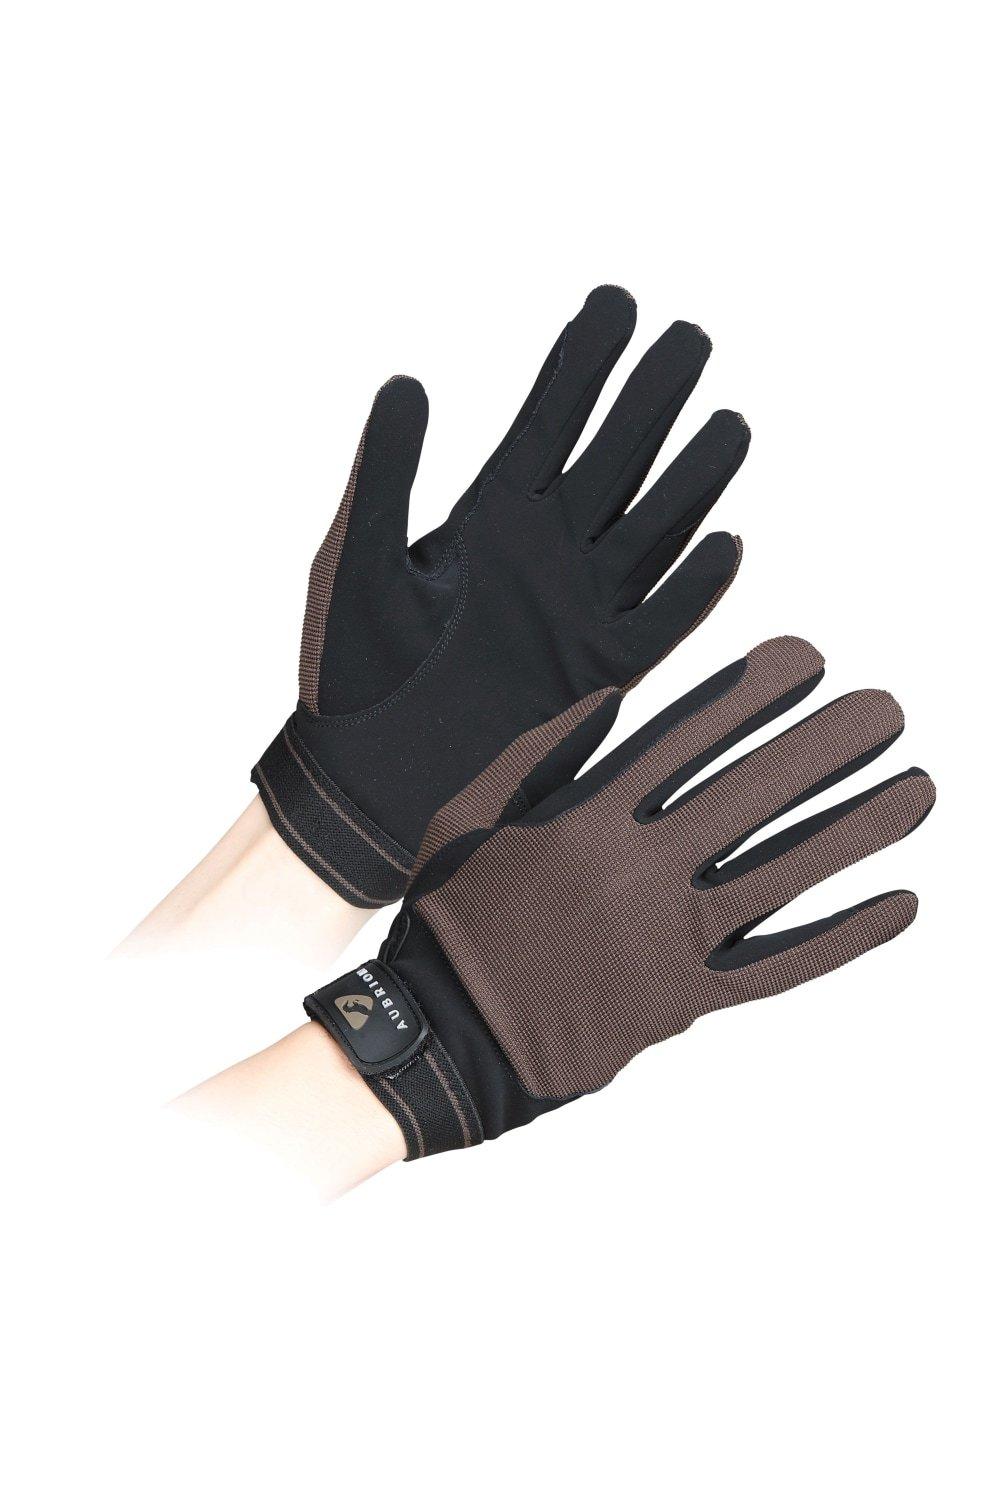 Сетчатые перчатки для верховой езды Aubrion, коричневый